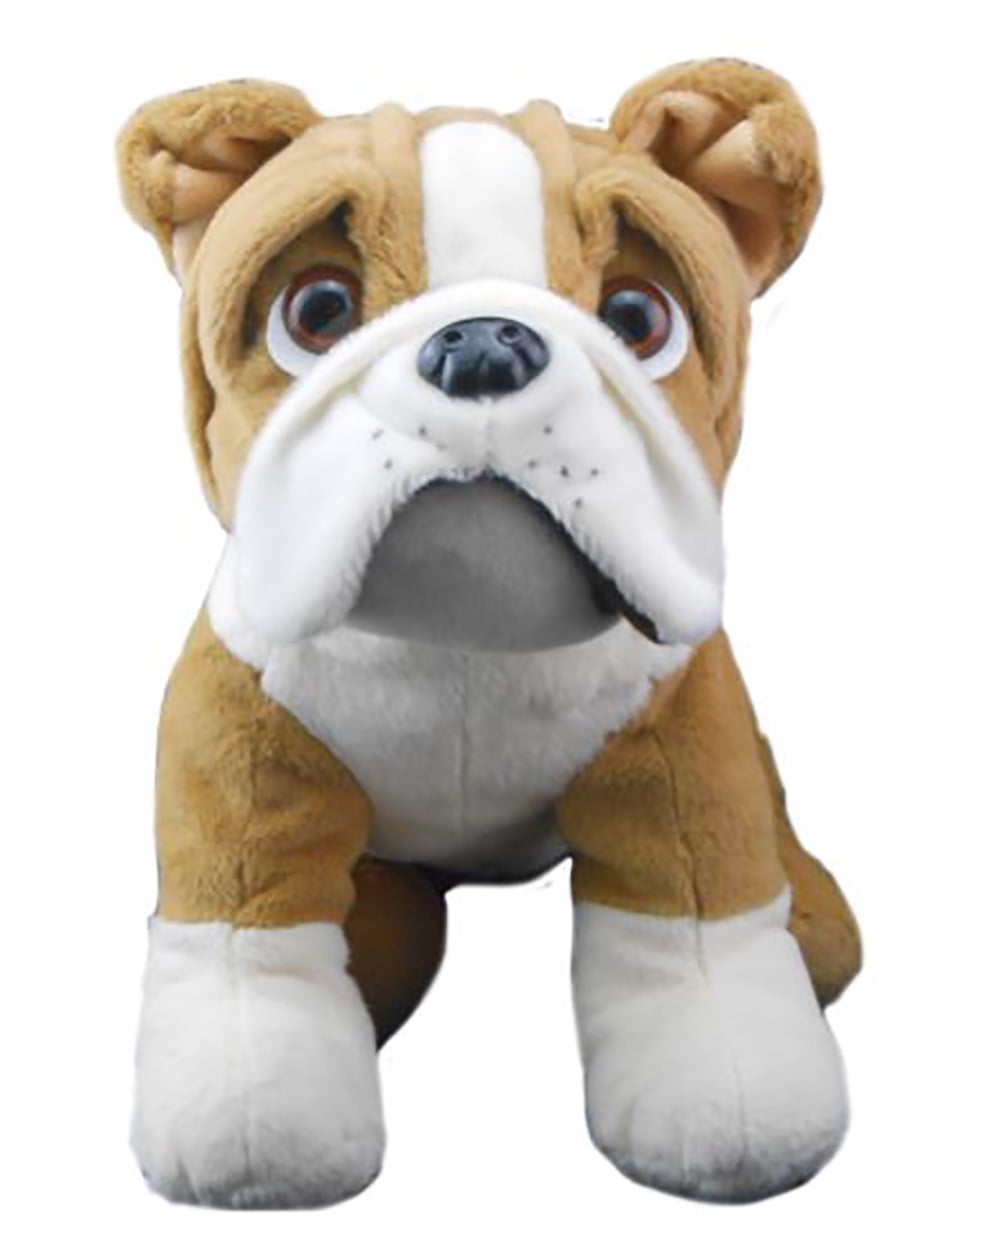 Cuddly Soft 8 inch Stuffed Poodle...We stuff 'em...you love 'em! Teddy Mountai 